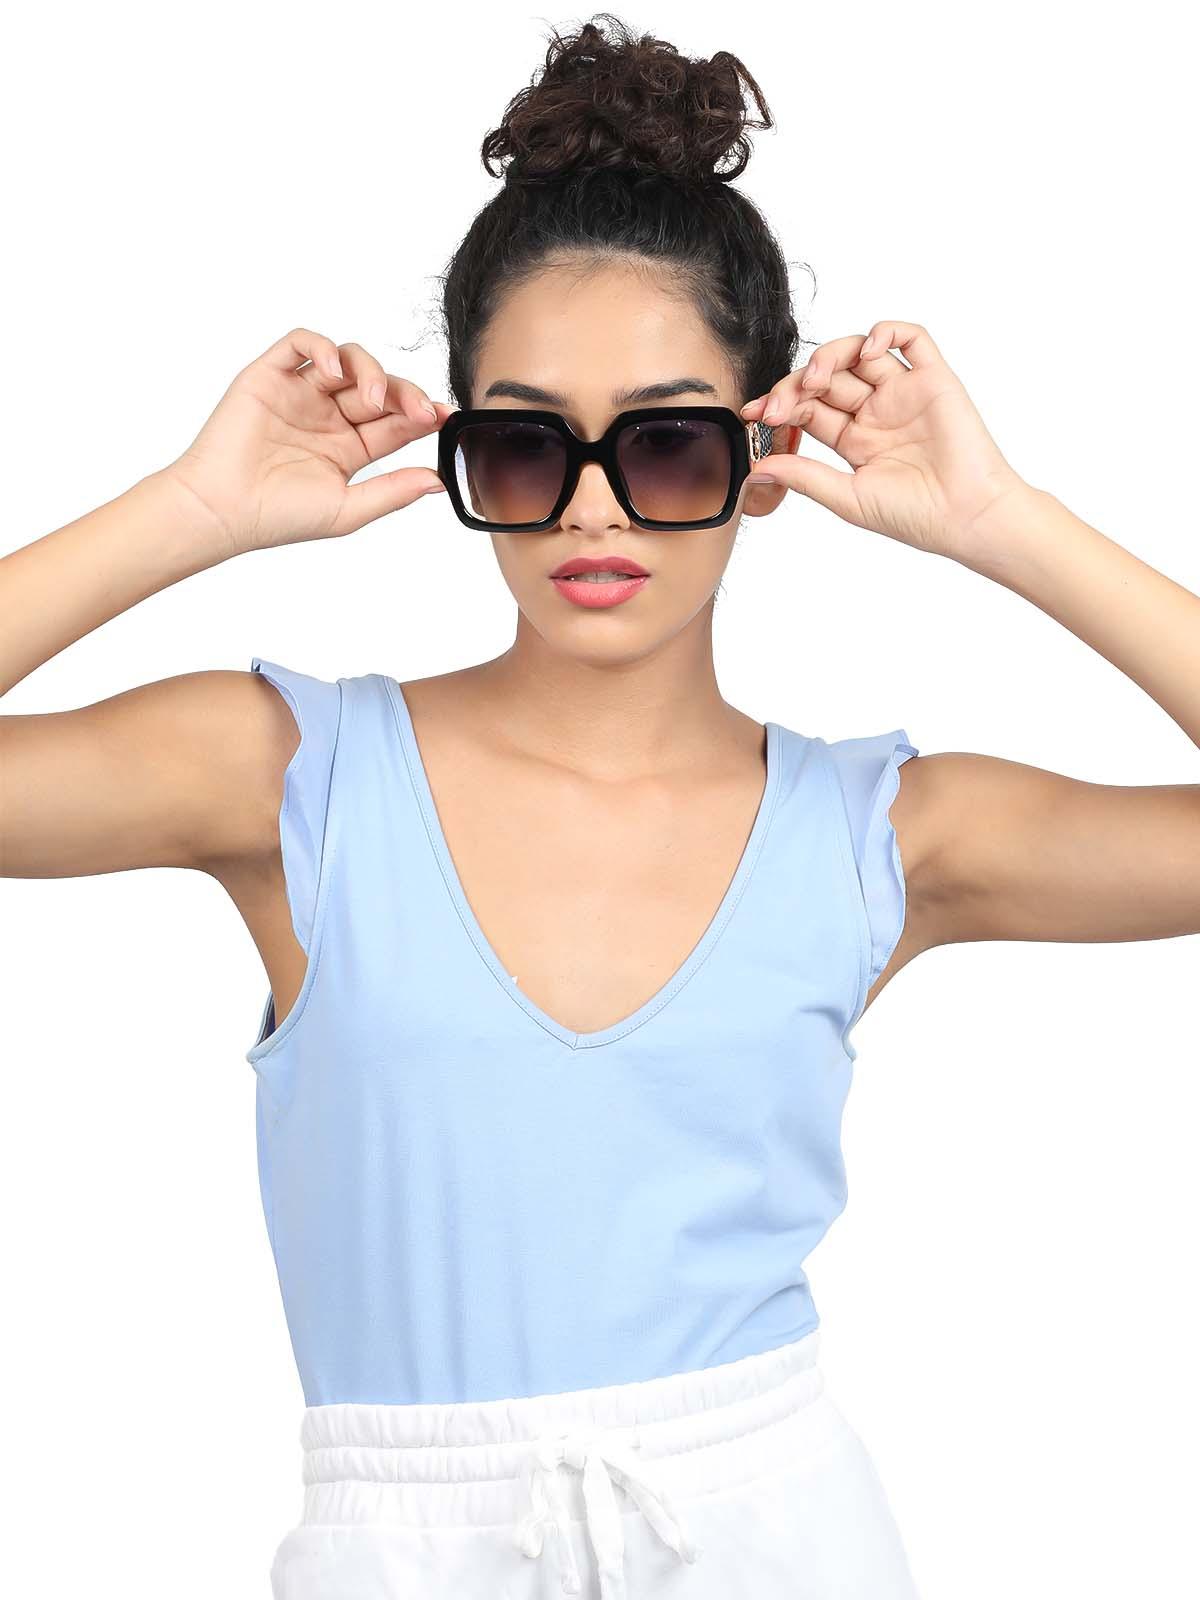 Odette Women Black Oversized Sunglasses